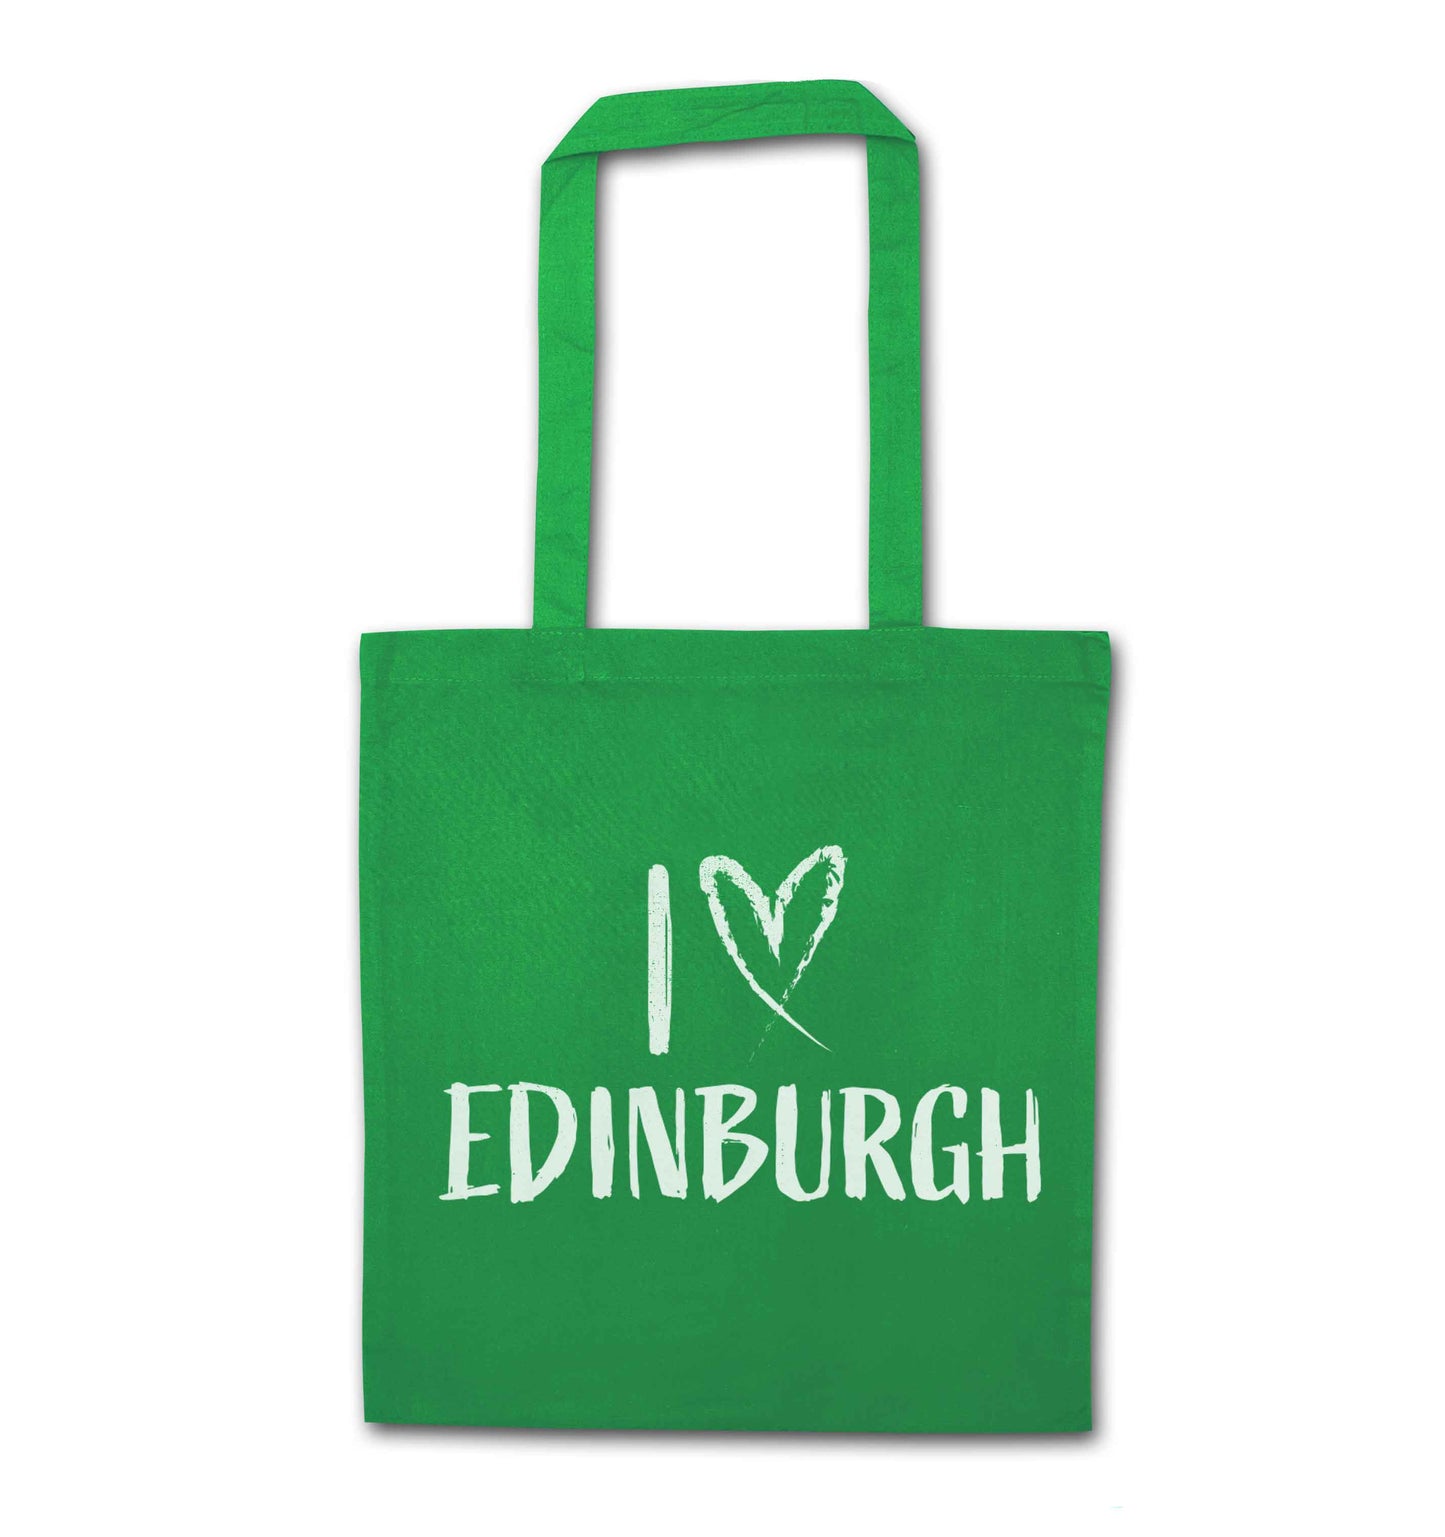 I love Edinburgh green tote bag